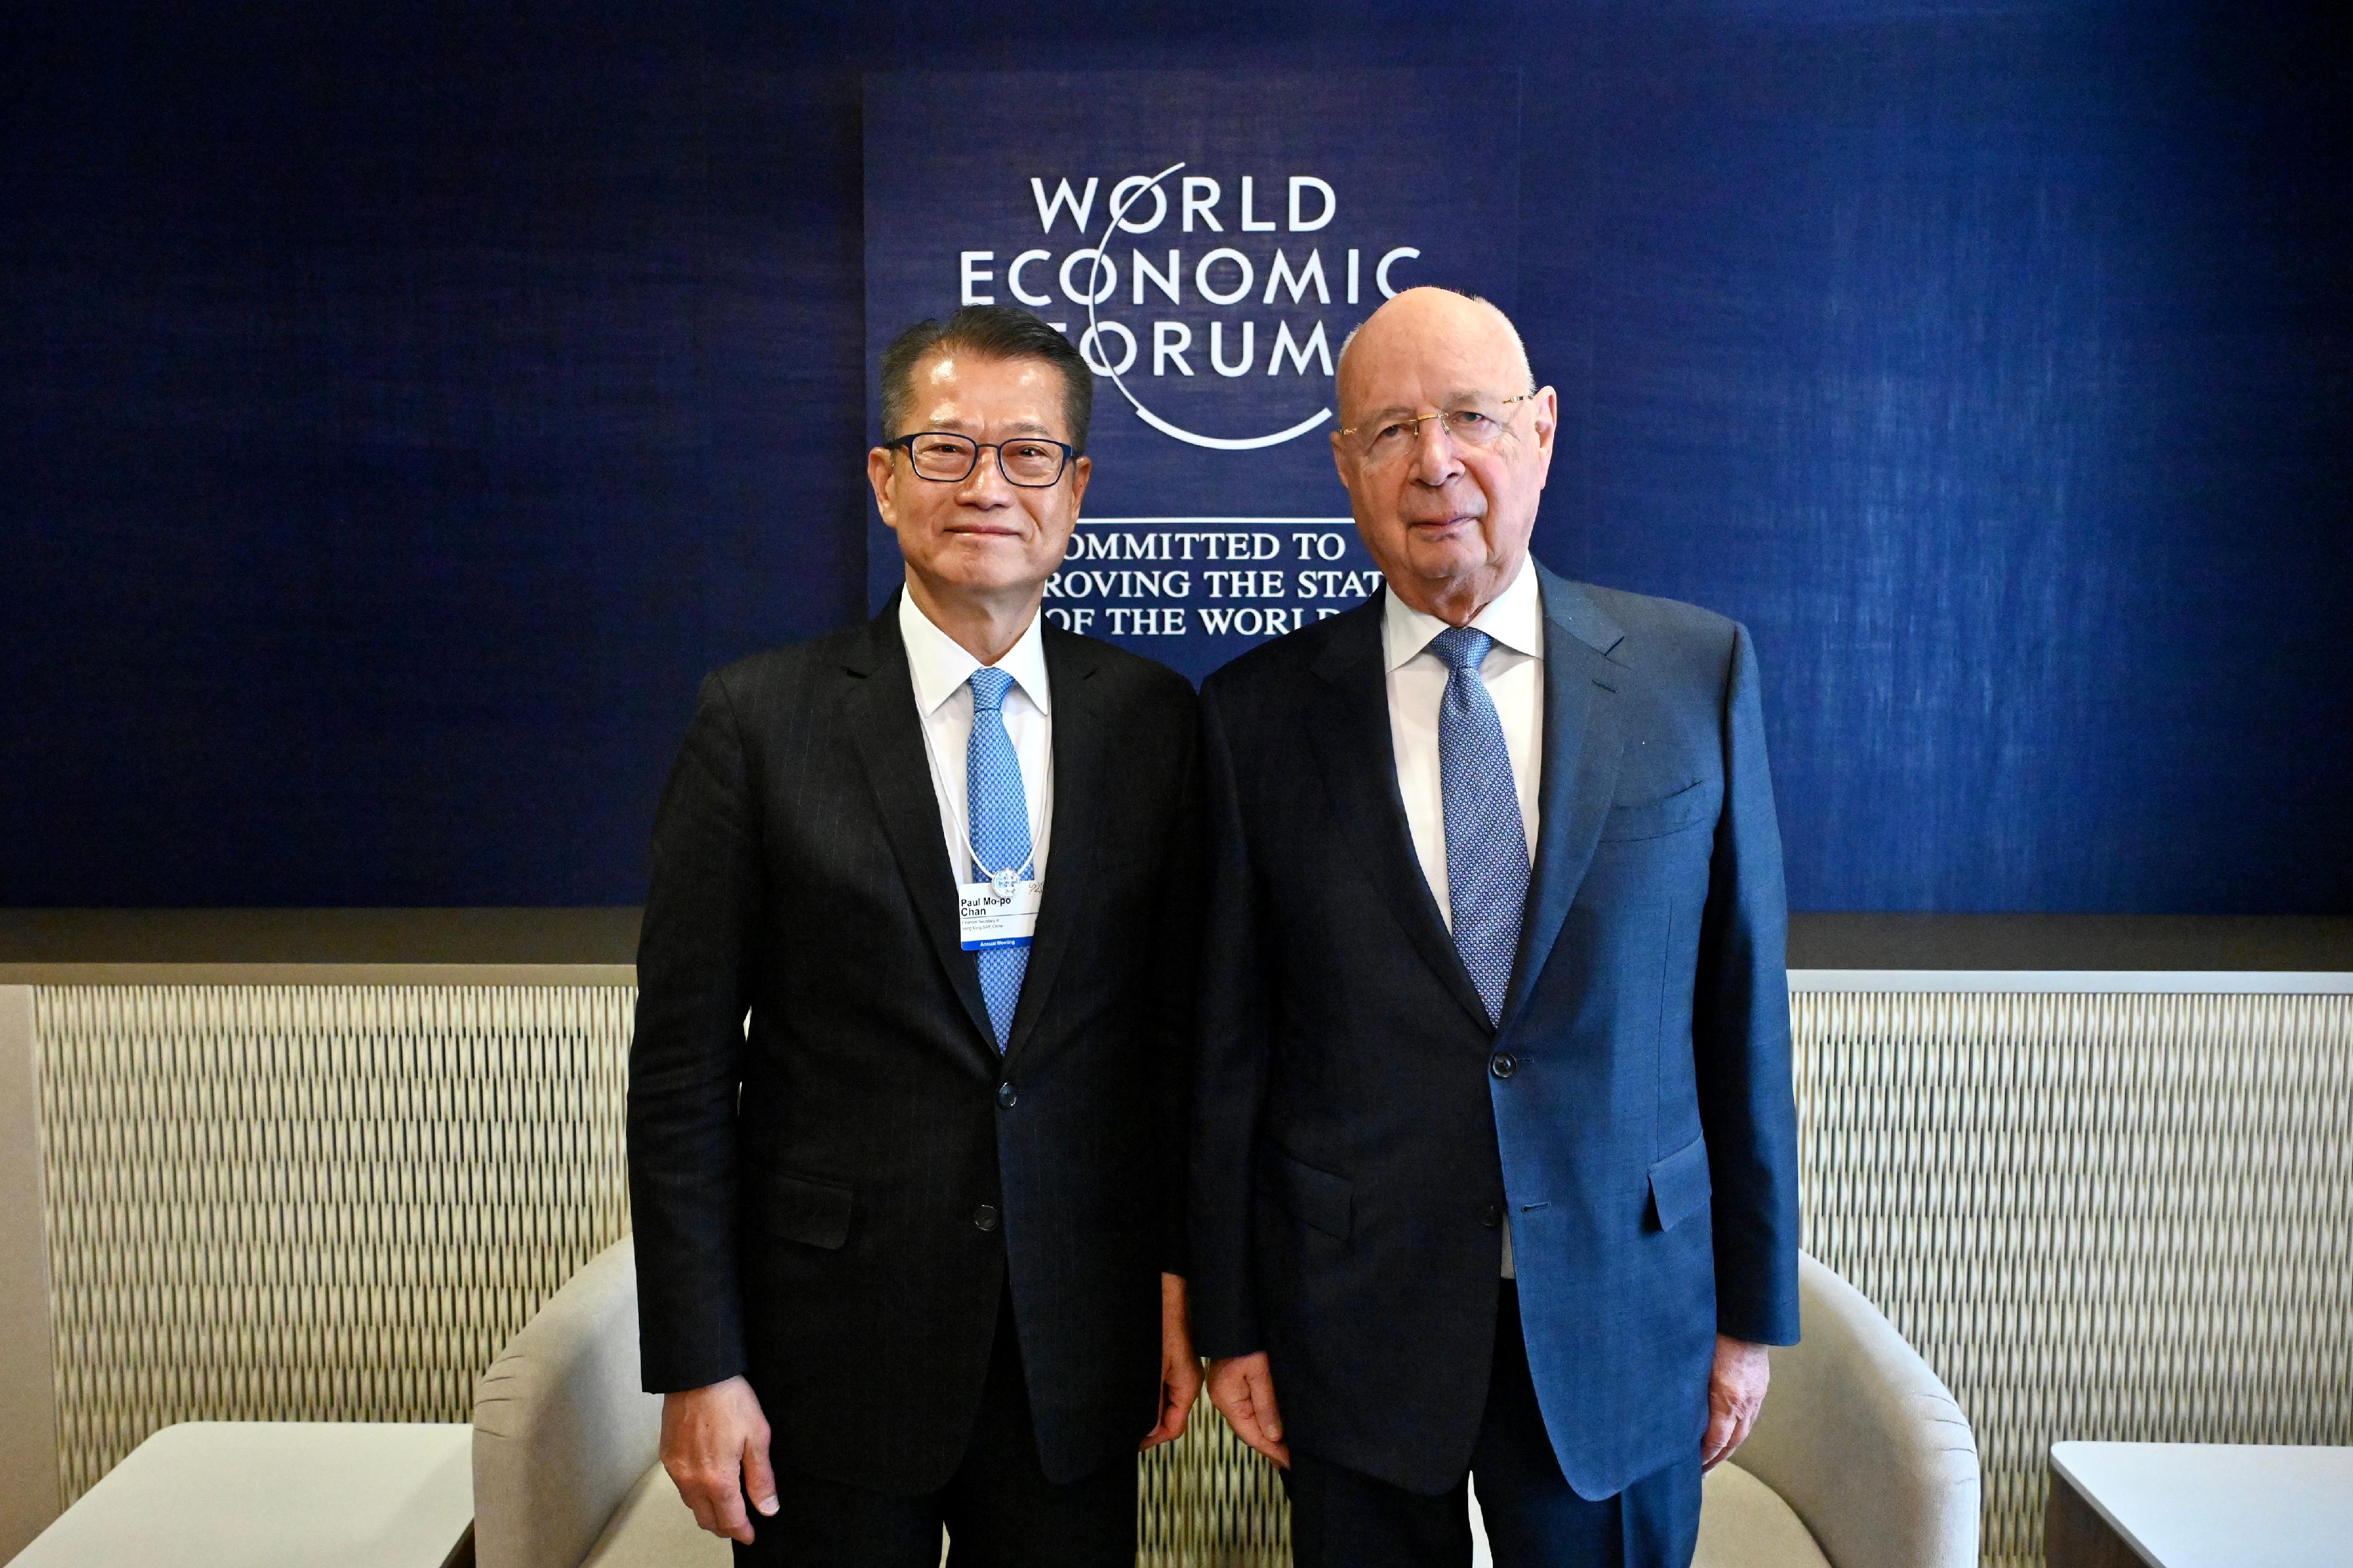 财政司司长陈茂波昨日（达沃斯时间一月十八日）继续在瑞士达沃斯出席世界经济论坛年会。图示陈茂波（左）与世界经济论坛创办人及执行主席施瓦布教授（右）会面。